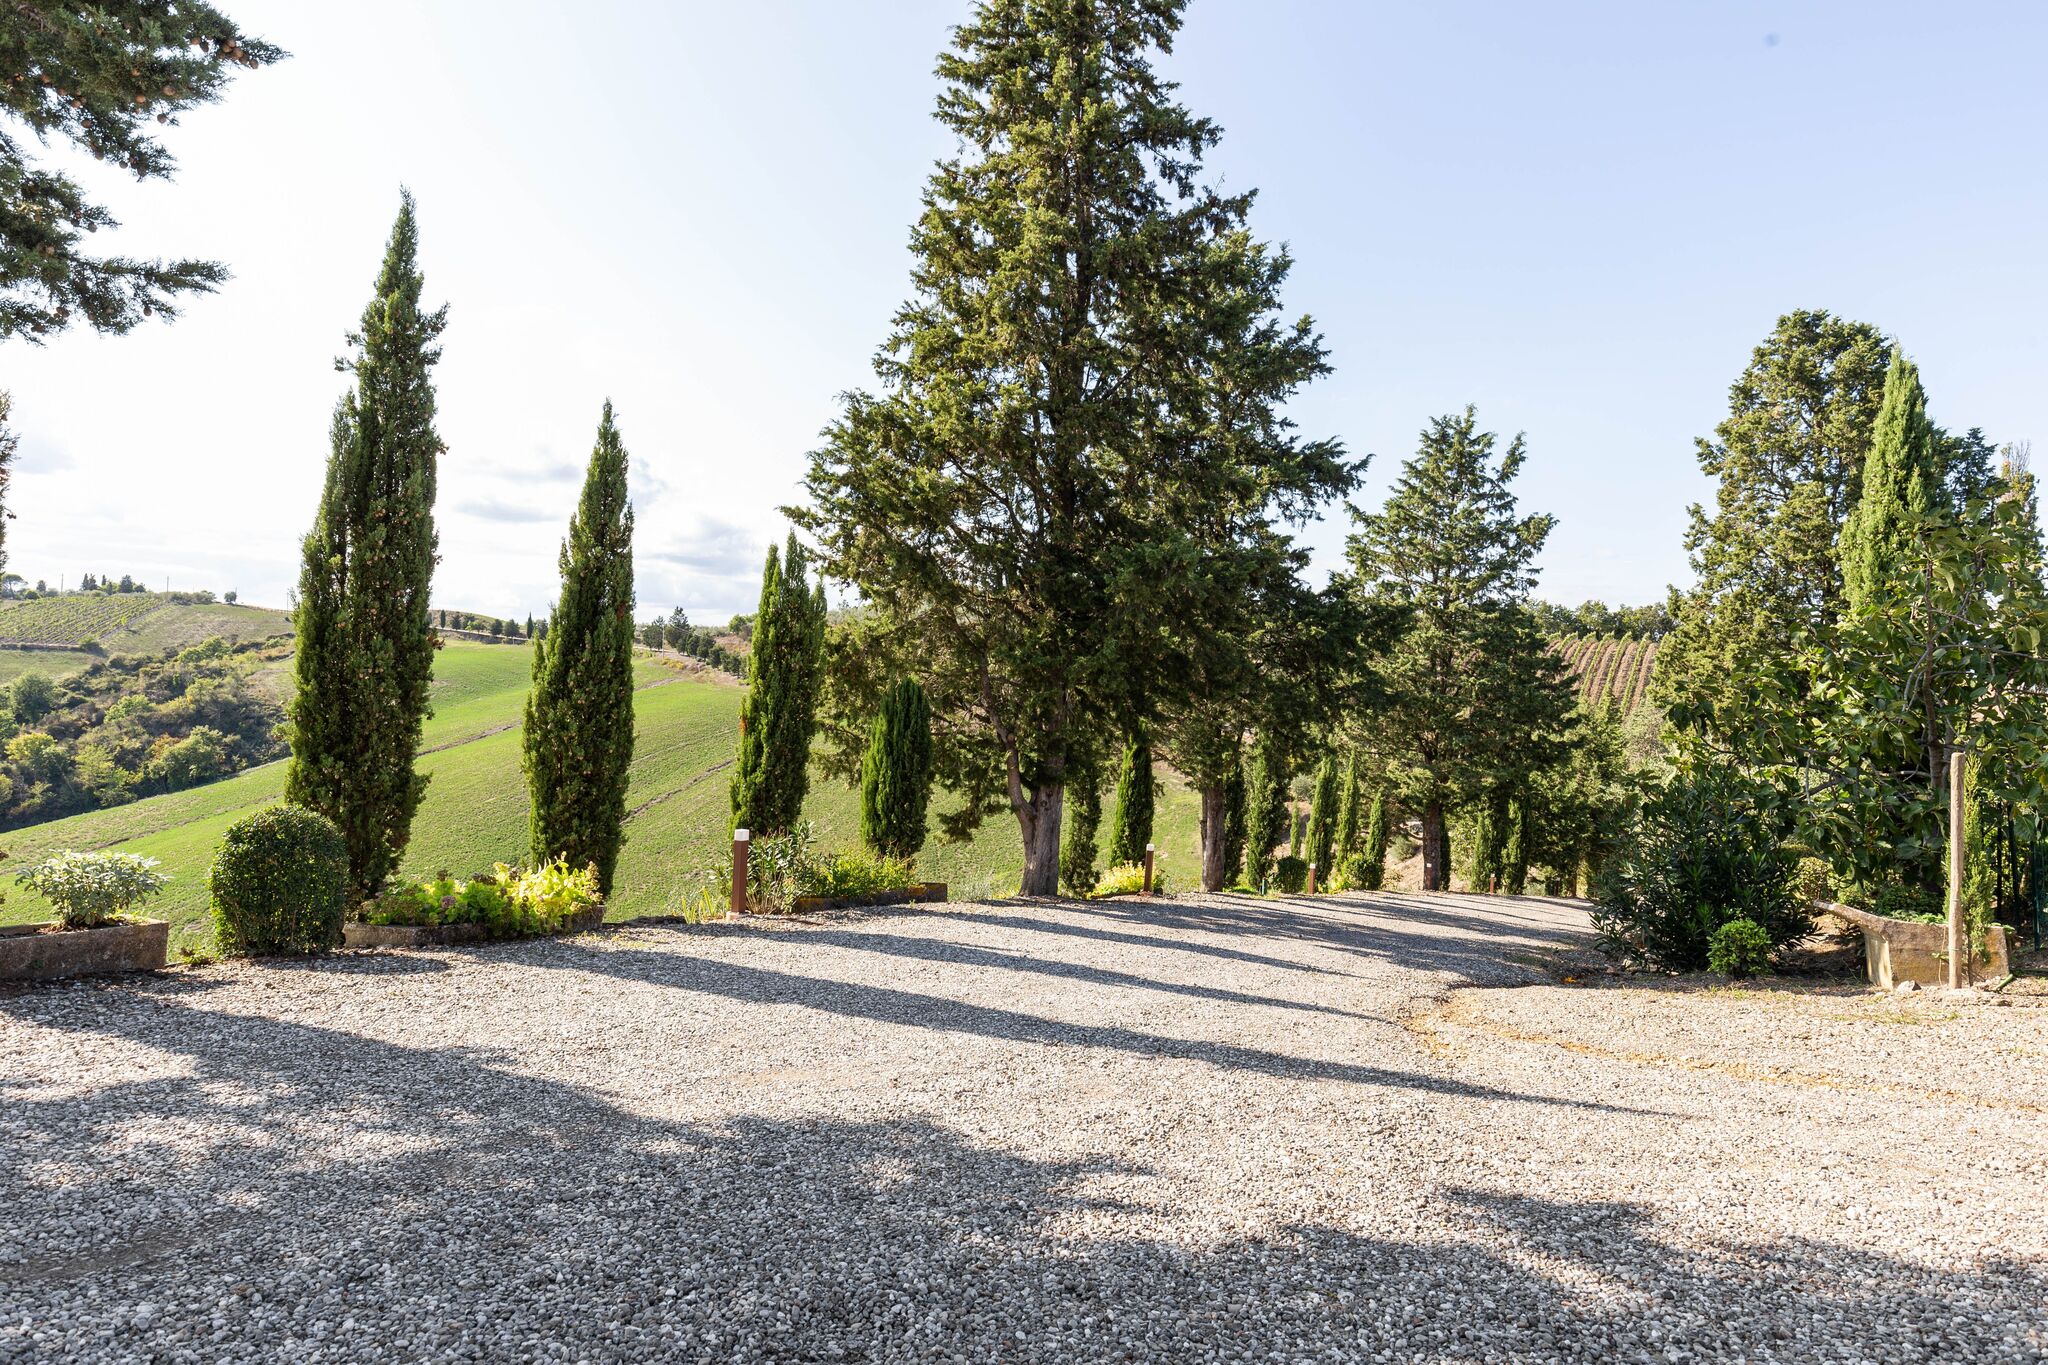 Rustieke villa voor 4 personen in Toscane